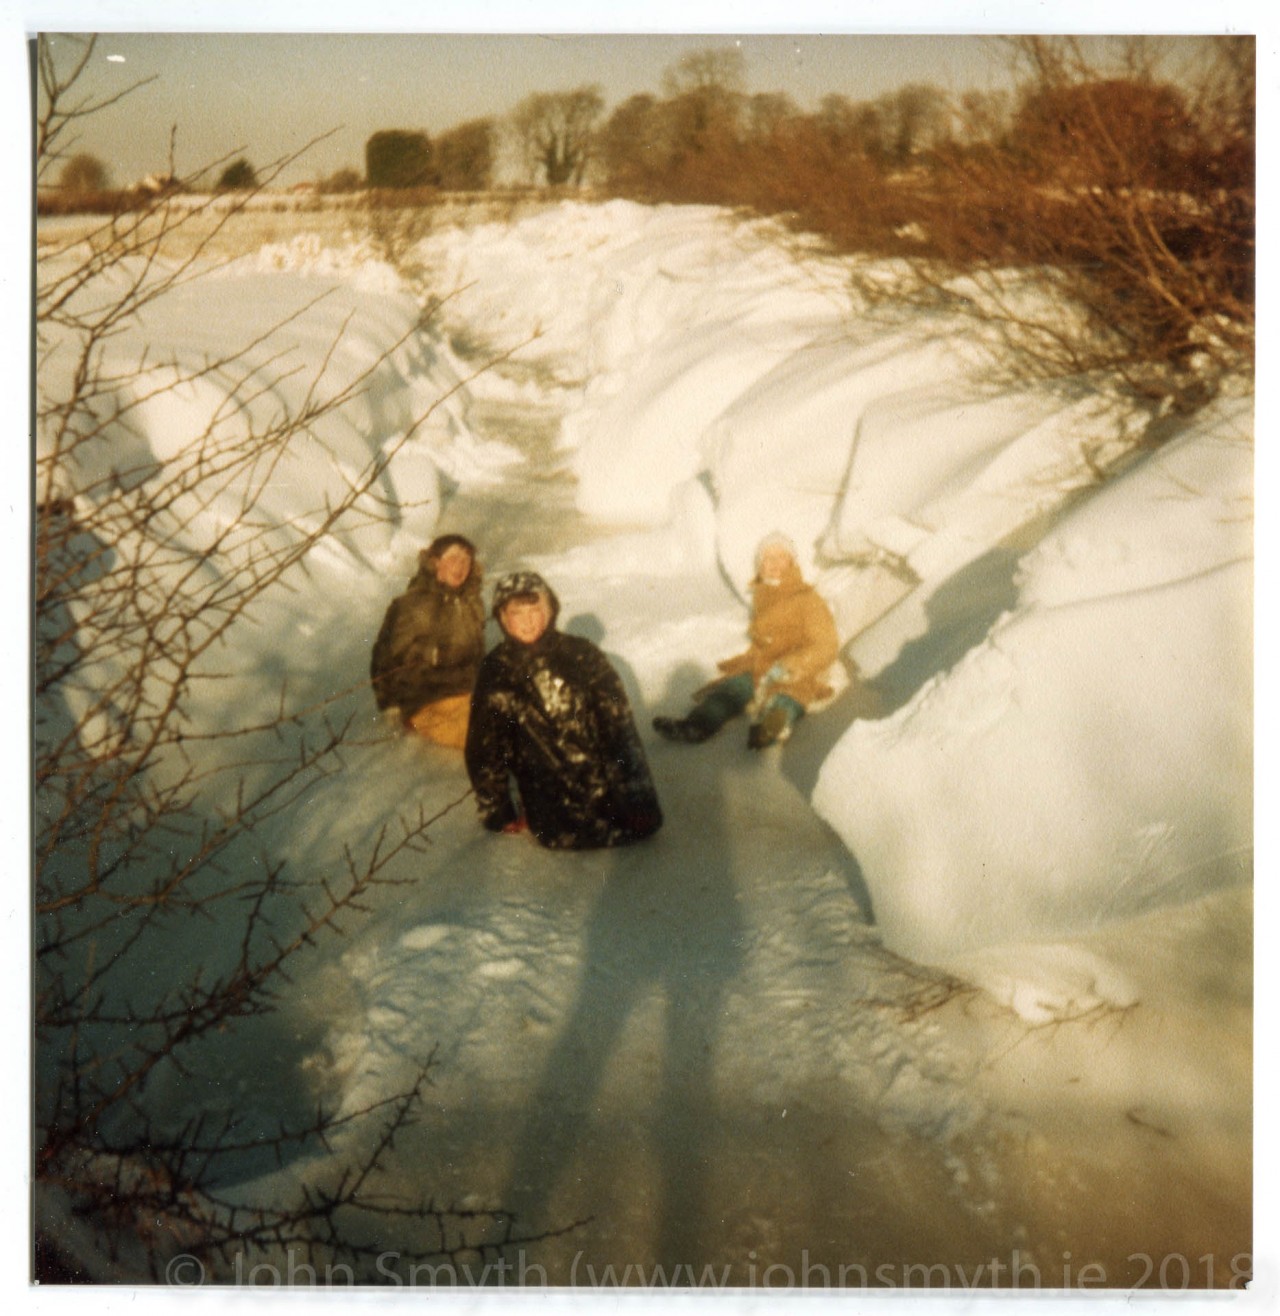 rahugh-snow-1982-2-of-2